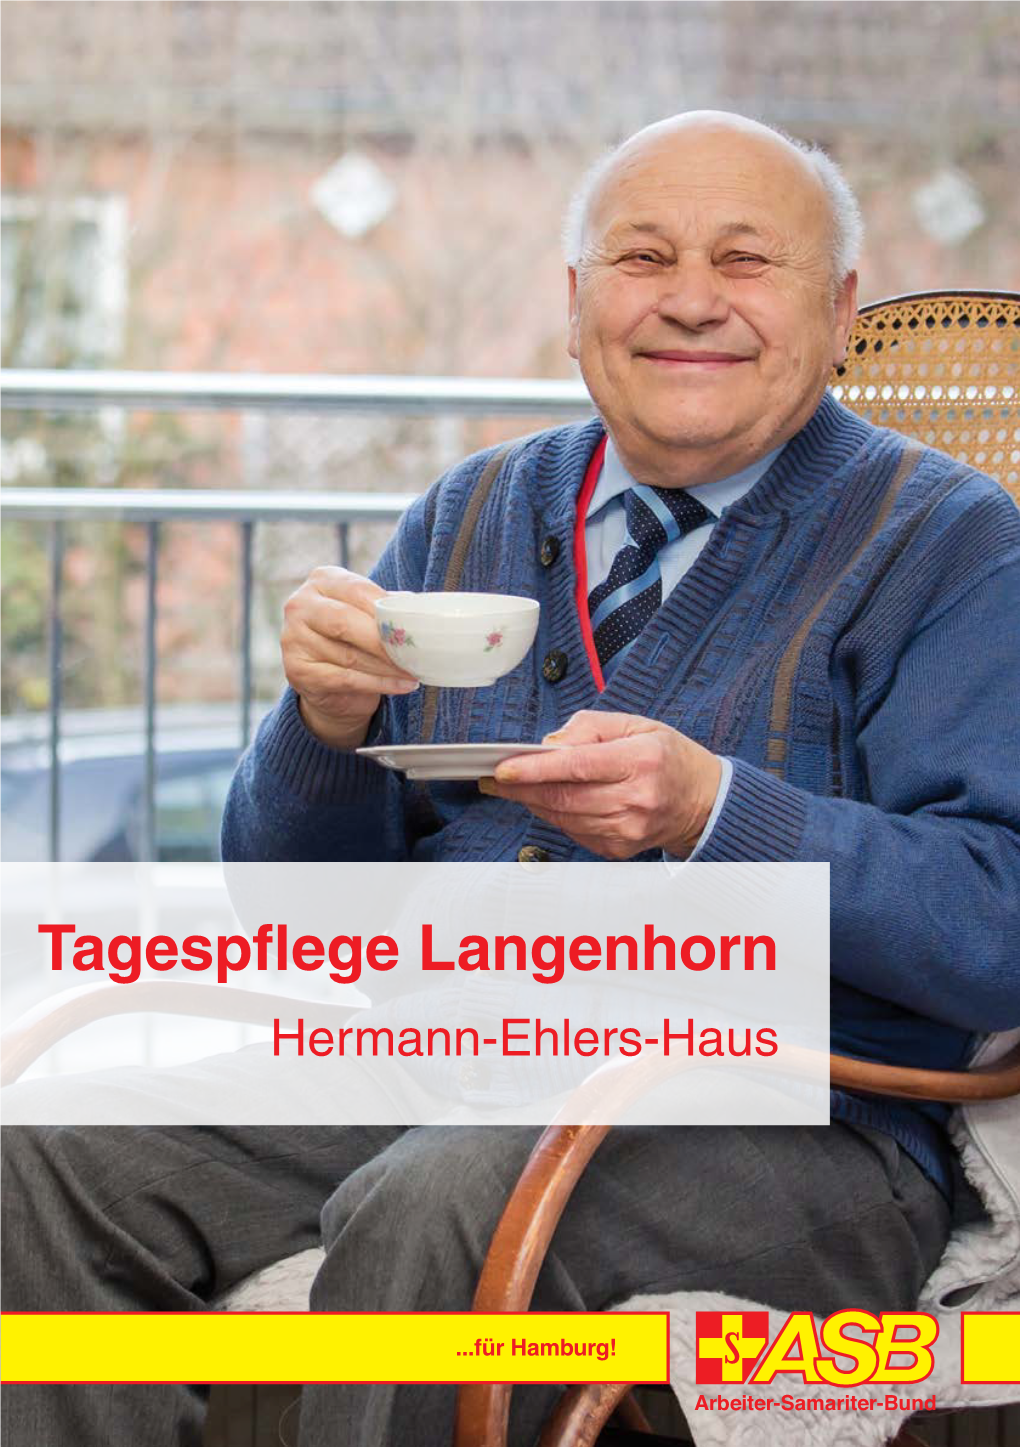 Tagespflege Langenhorn Hermann-Ehlers-Haus